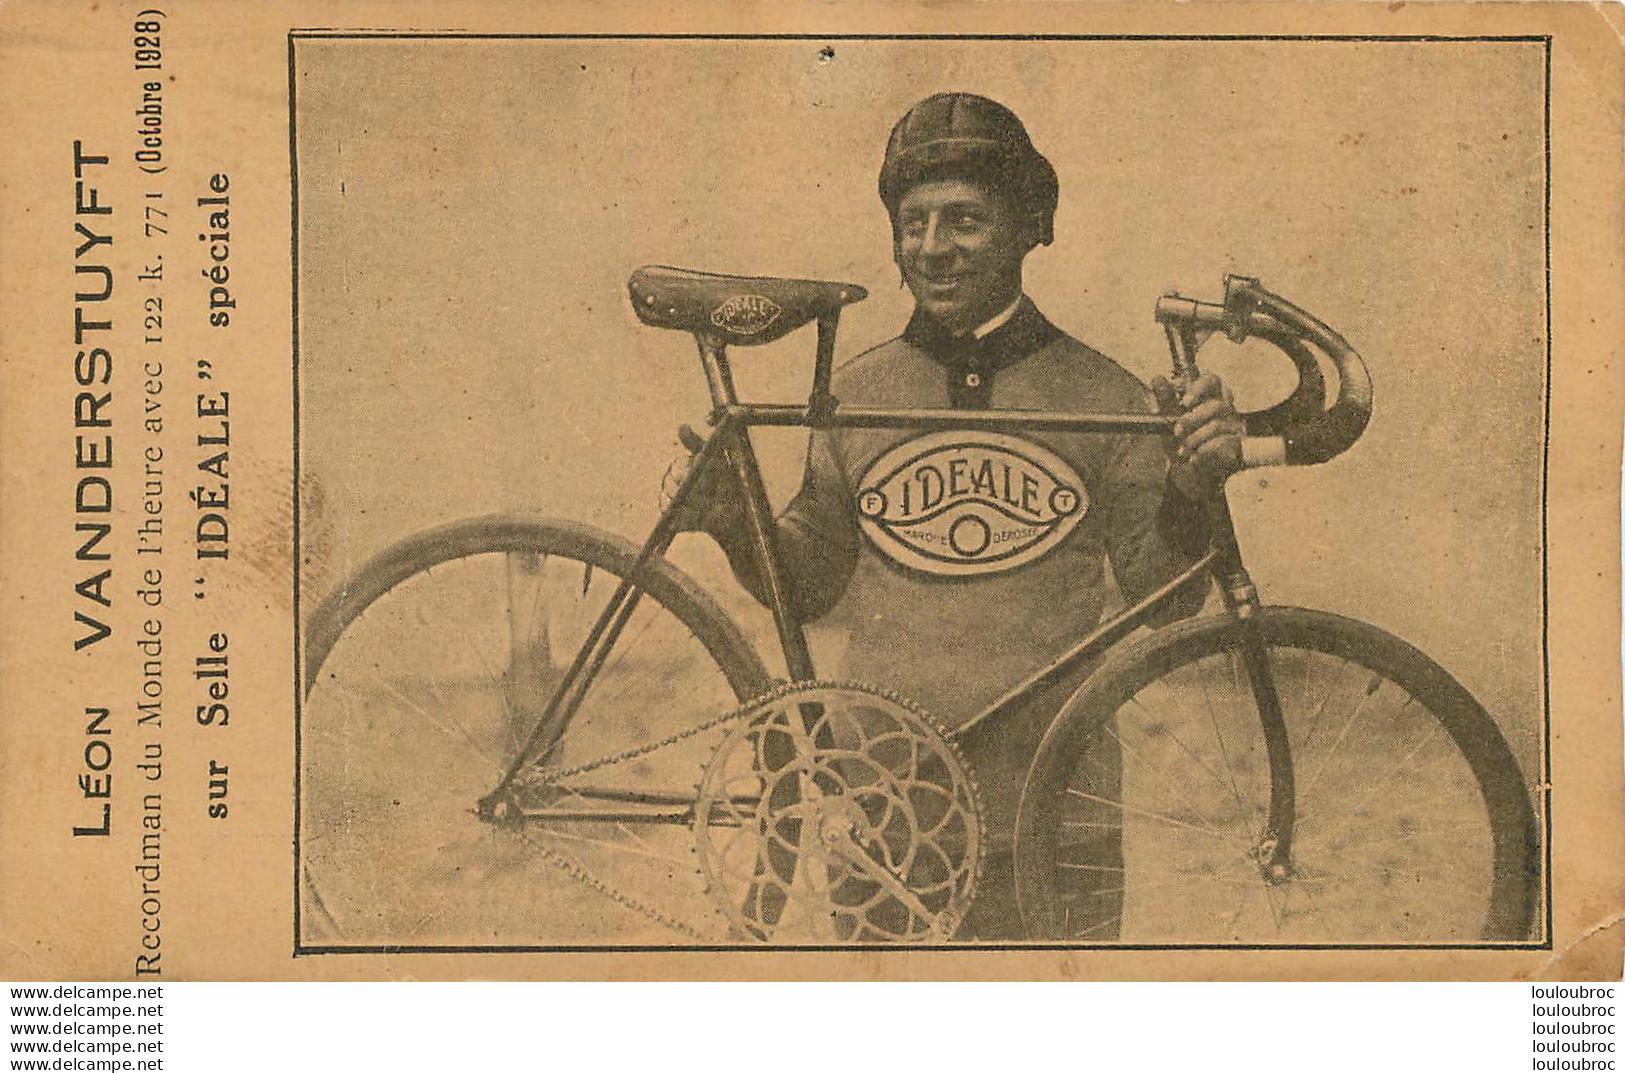 LEON VANDERSTUYFT RECORDMAN DU MONDE DE L'HEURE 10/1928 AVEC SELLE IDEALE SPECIALE - Cycling